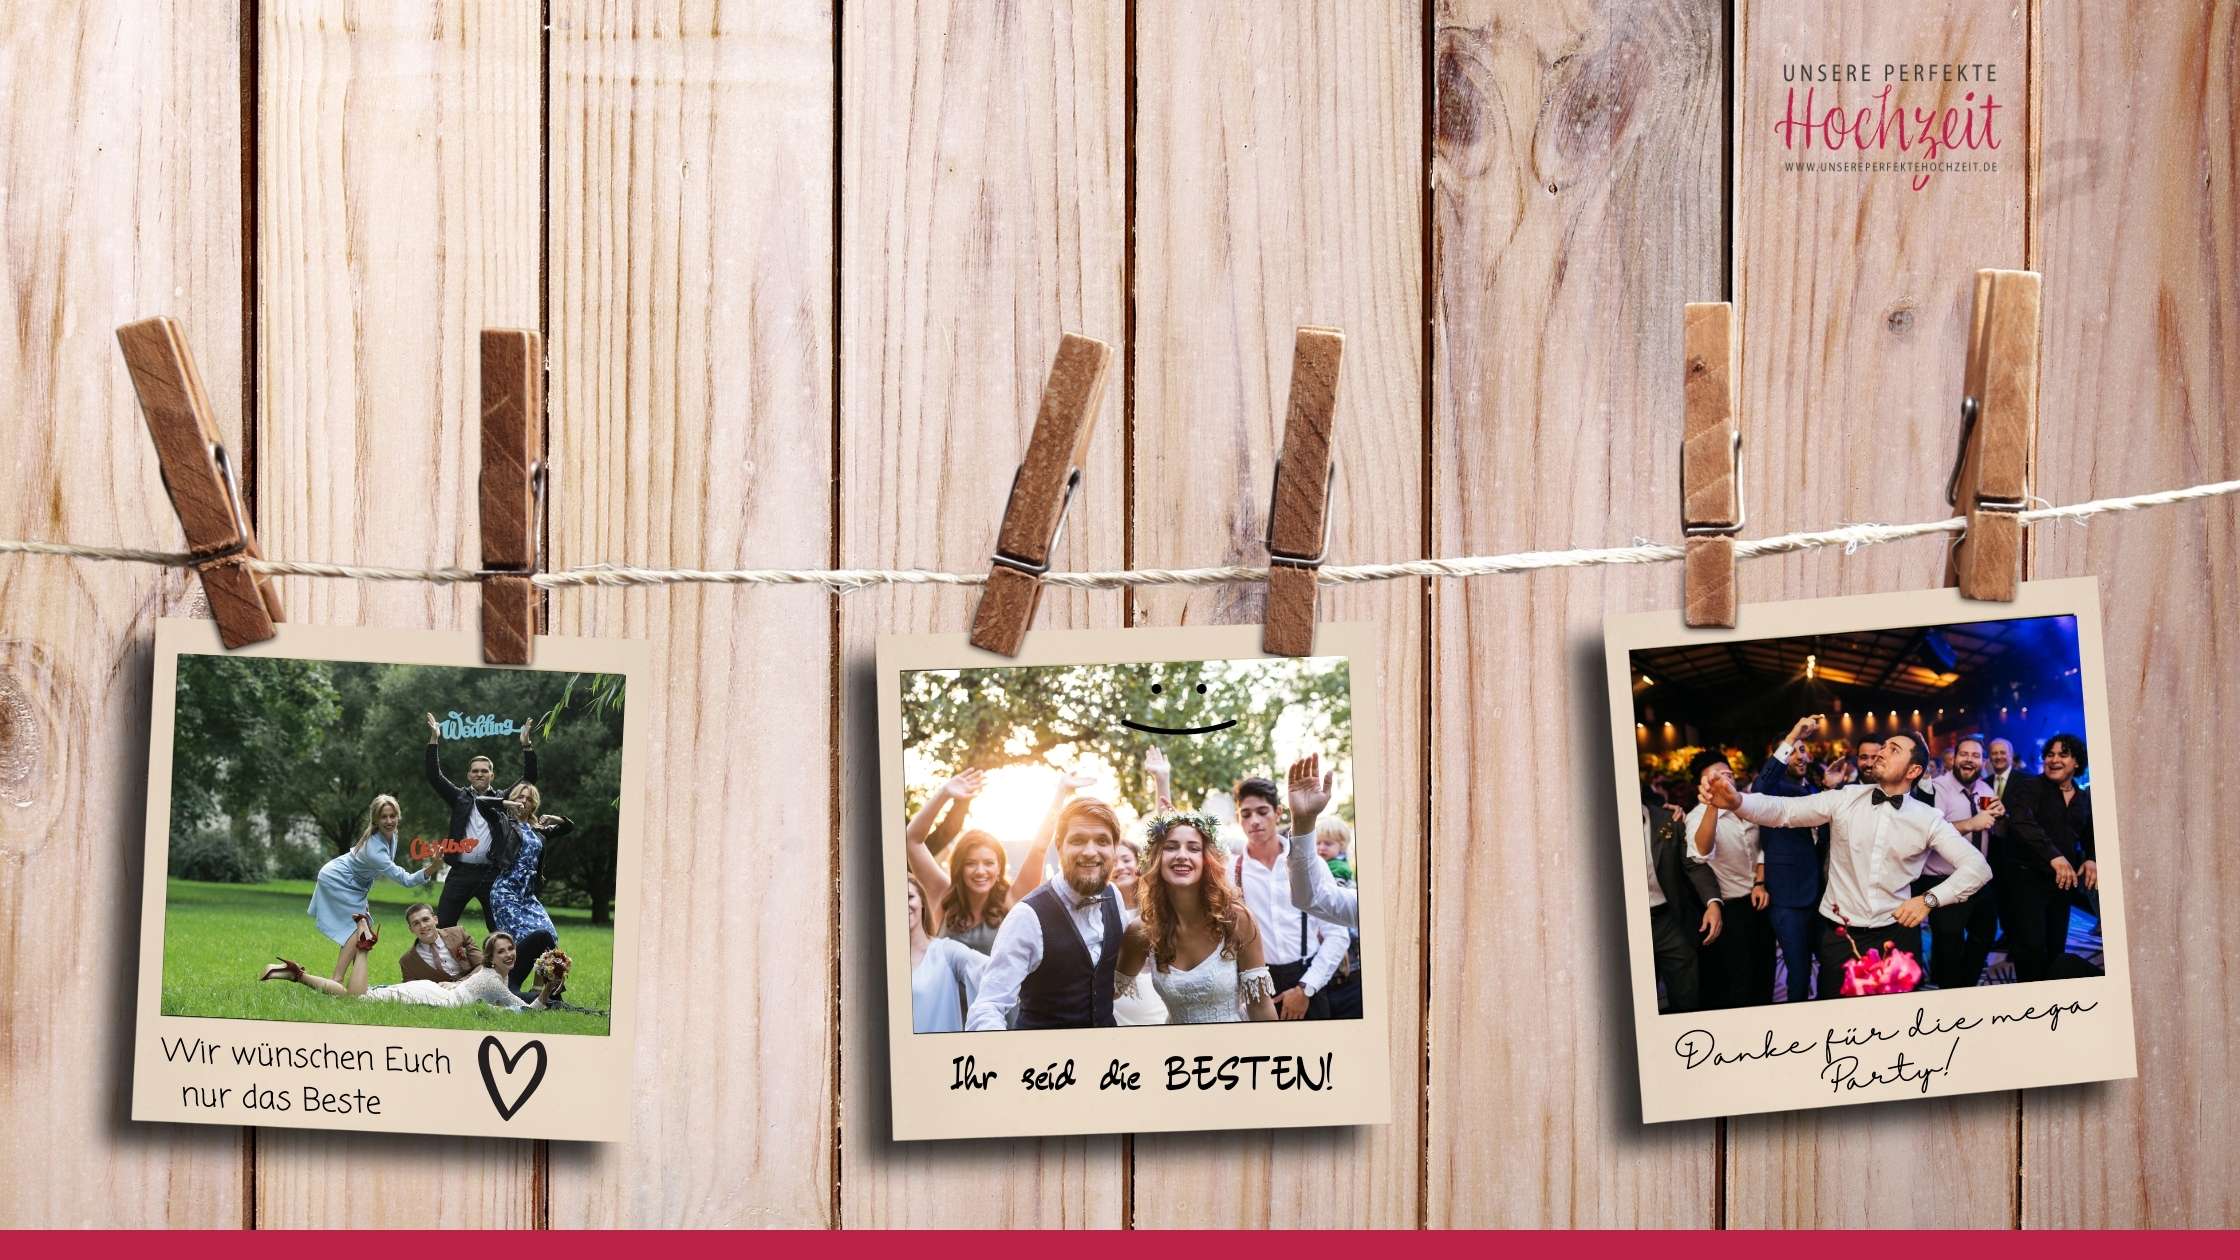 Unsere perfekte Hochzeit - Die 5 schönsten Gästebuch Ideen - Polaroid Fotos auf der Leine